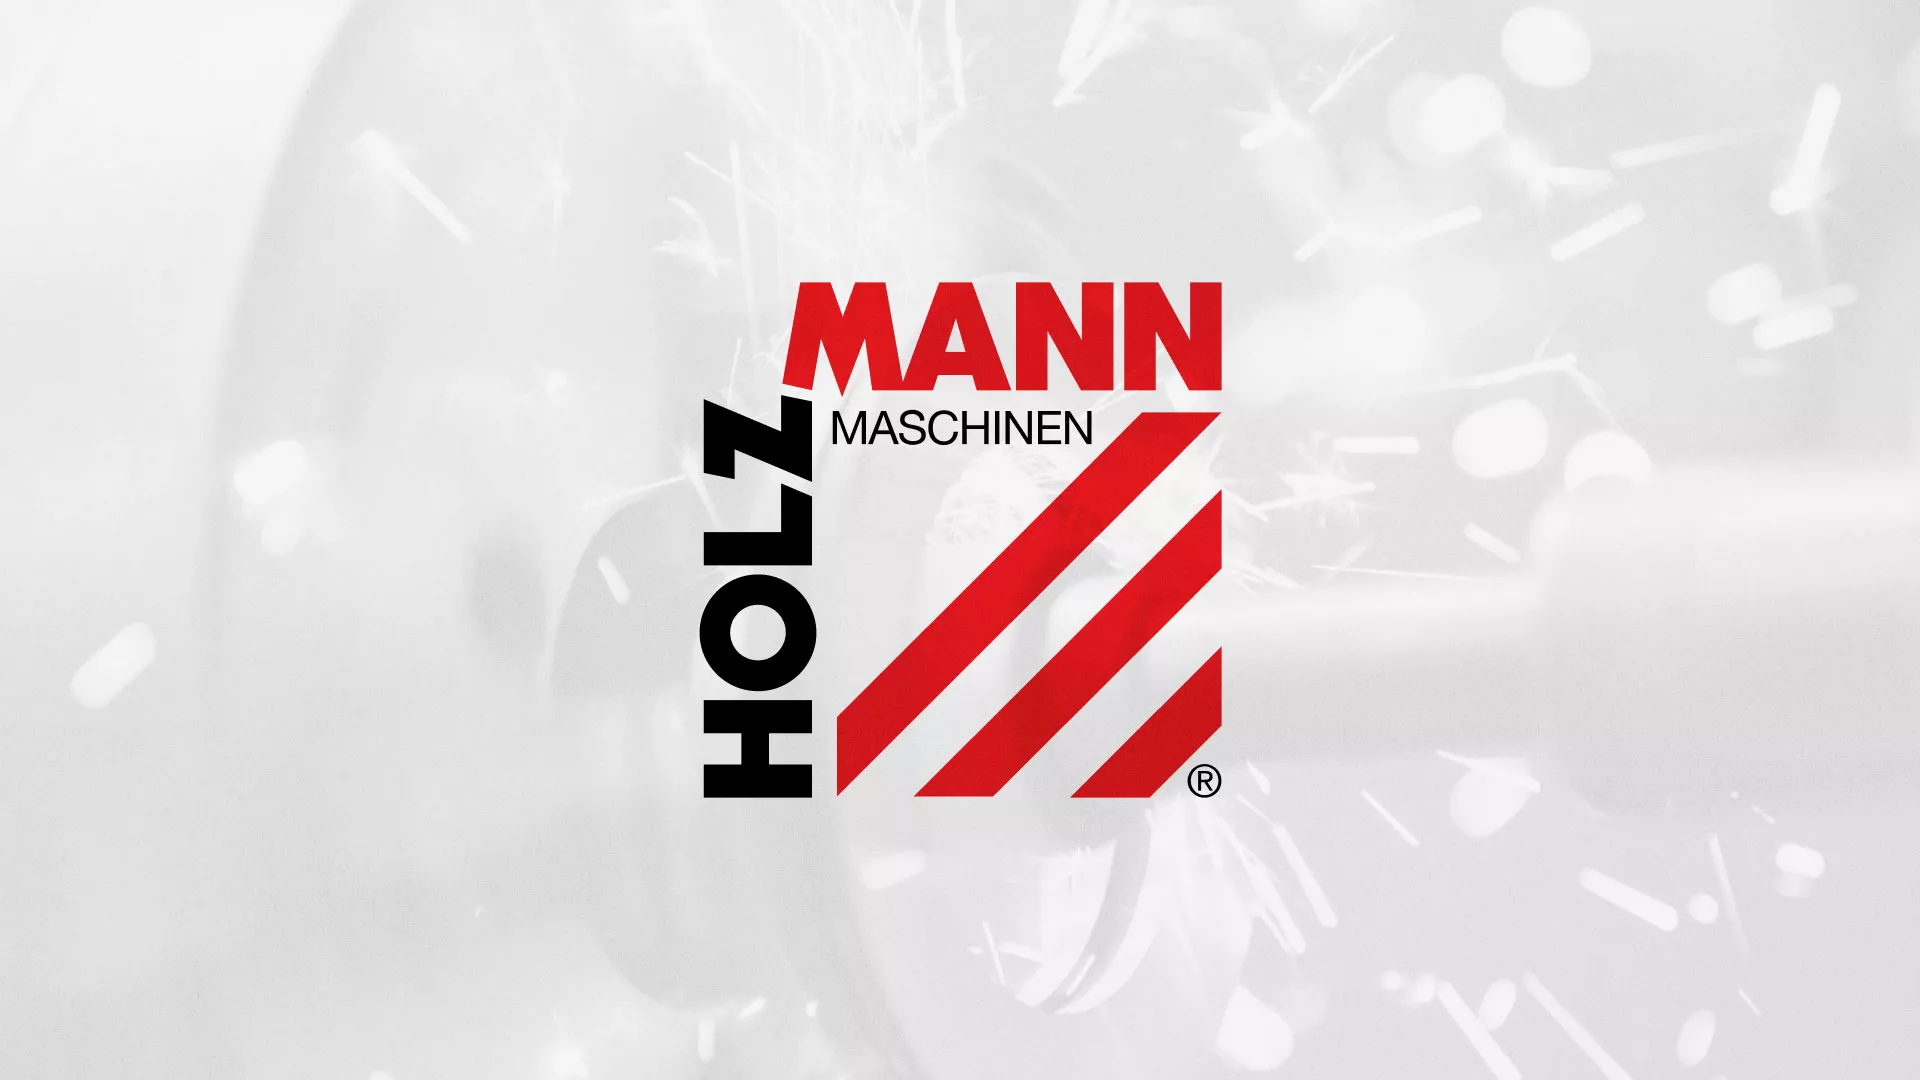 Создание сайта компании «HOLZMANN Maschinen GmbH» в Усолье